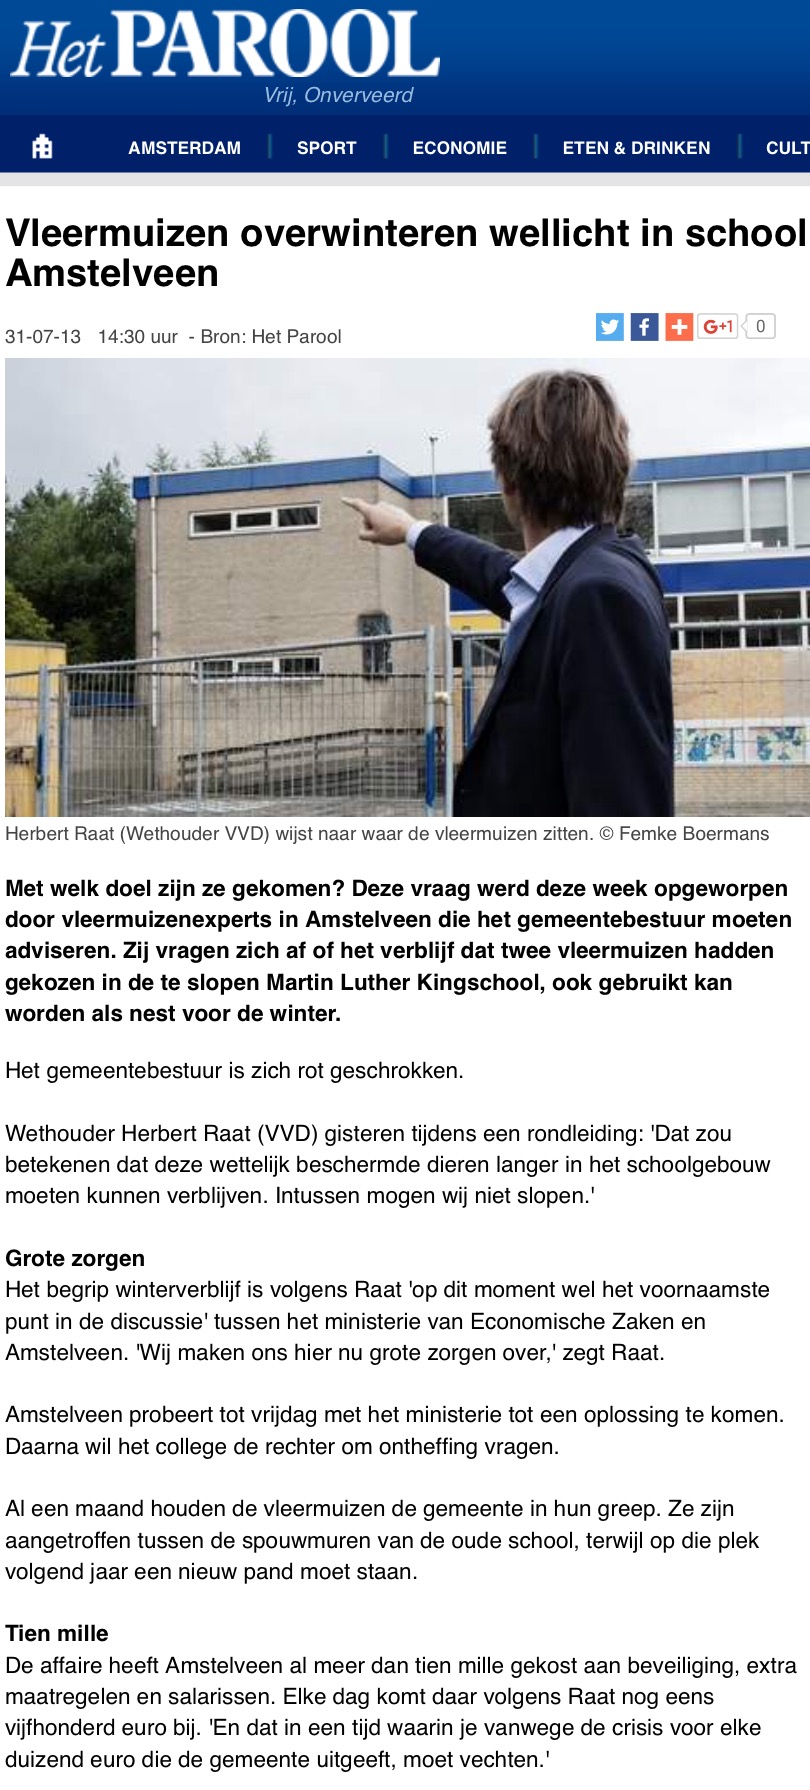 2013-31-7 Het Parool over vleermuizen Amstelveen